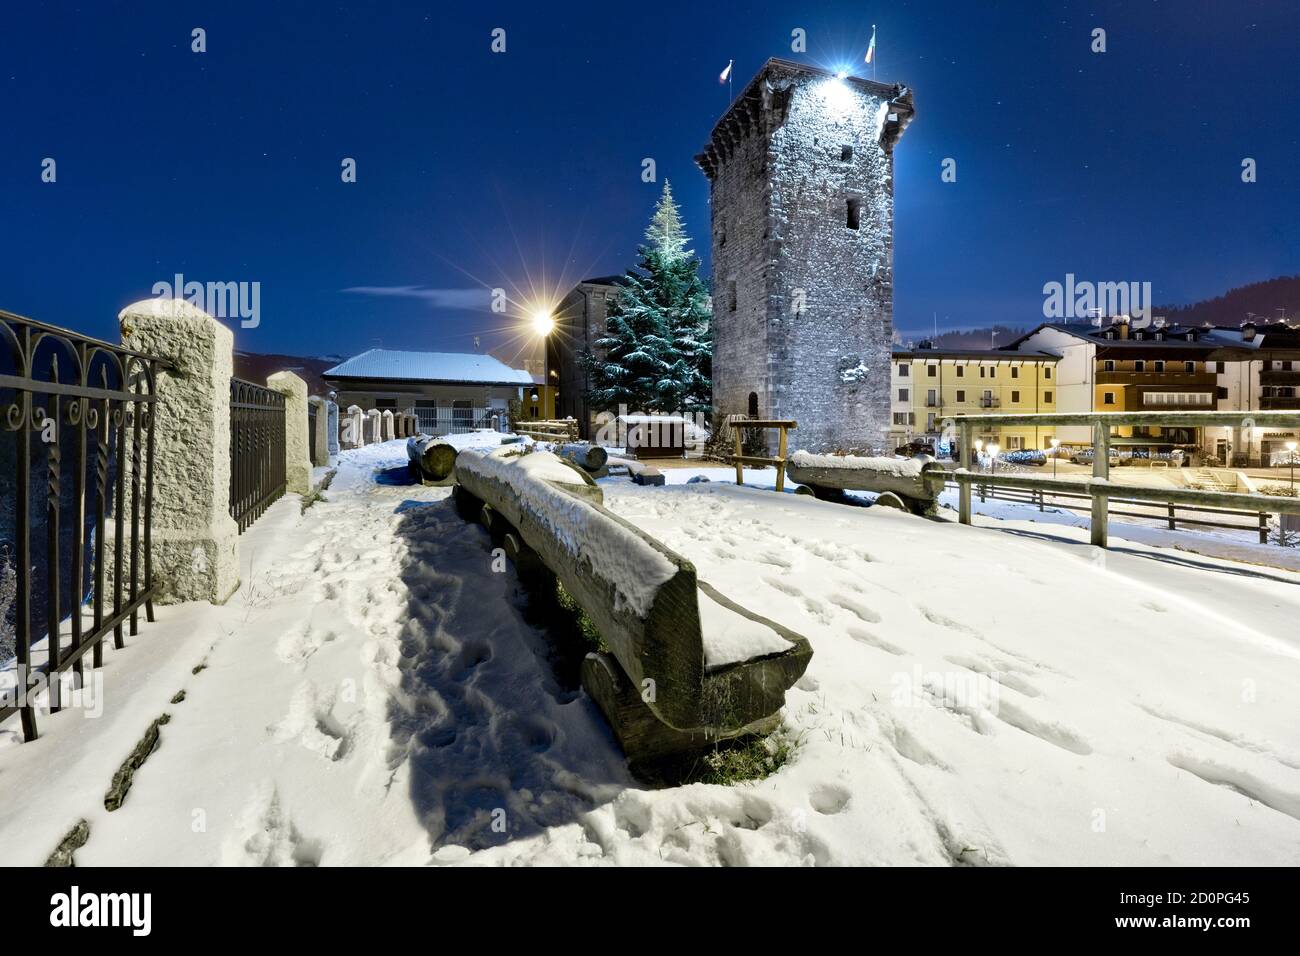 Der mittelalterliche Turm, der von den Scaligeri auf dem Platz Enego gebaut wurde. Hochebene von Asiago, Provinz Vicenza, Venetien, Italien, Europa. Stockfoto